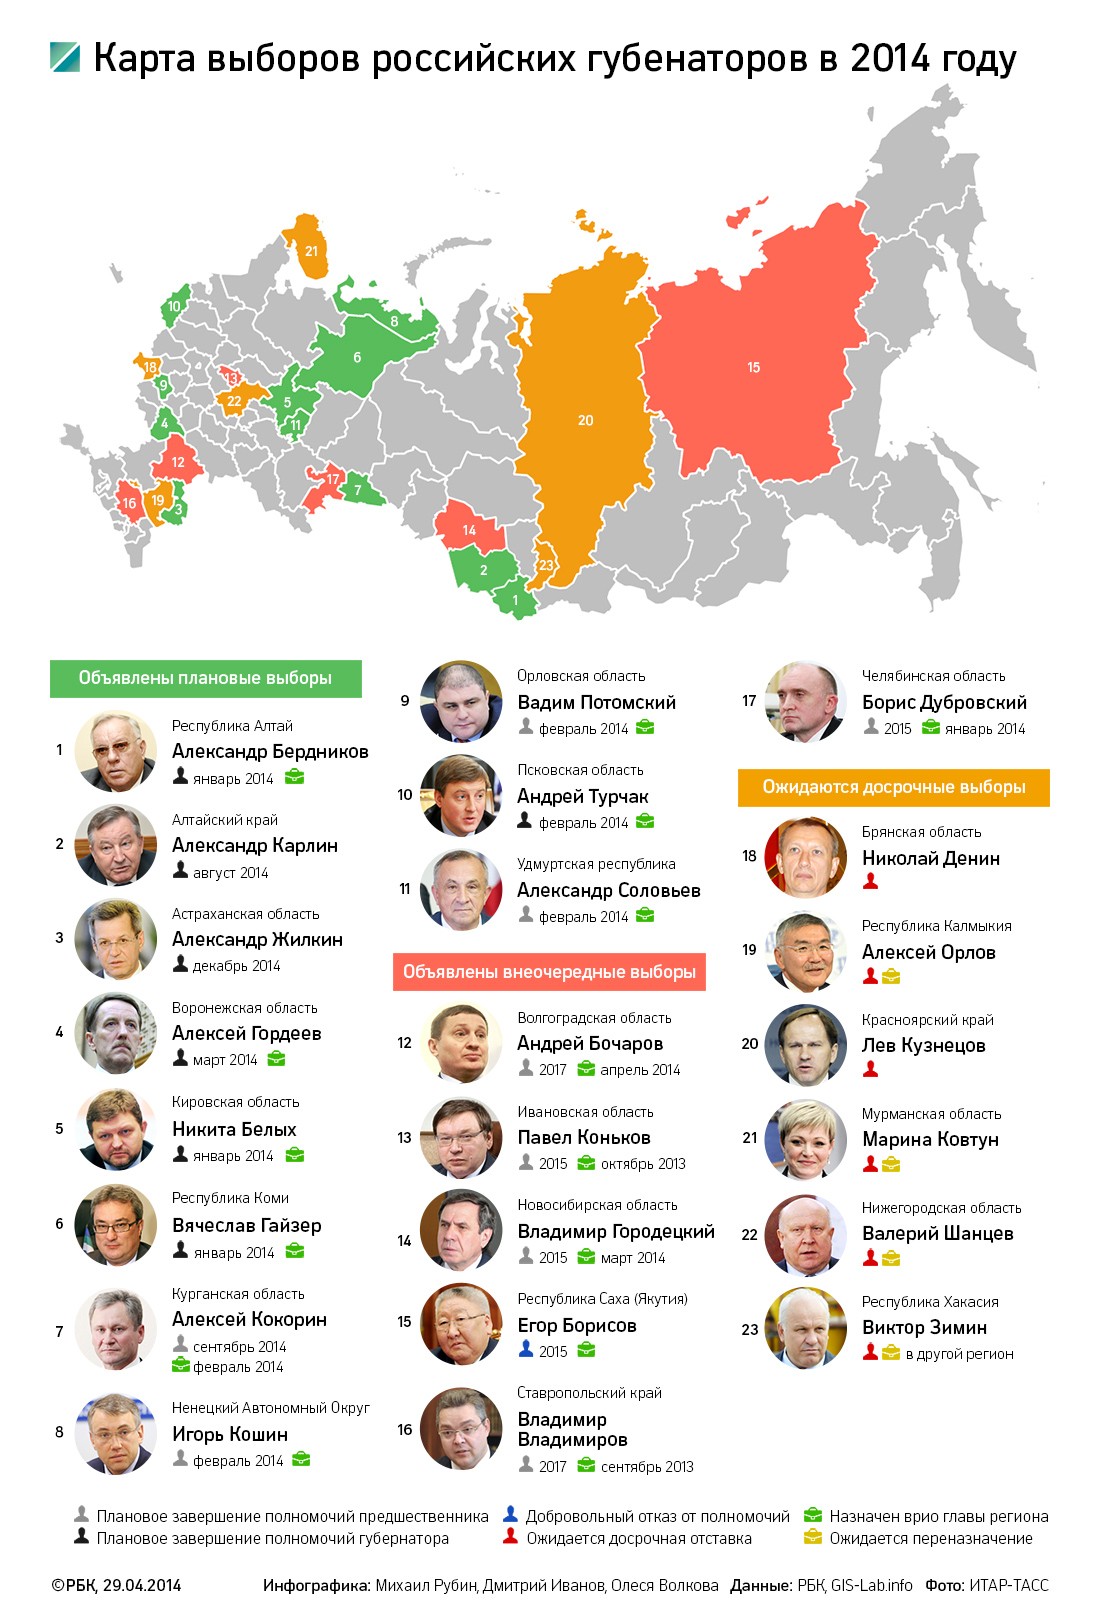 Путин отправил оренбургского губернатора на досрочные выборы